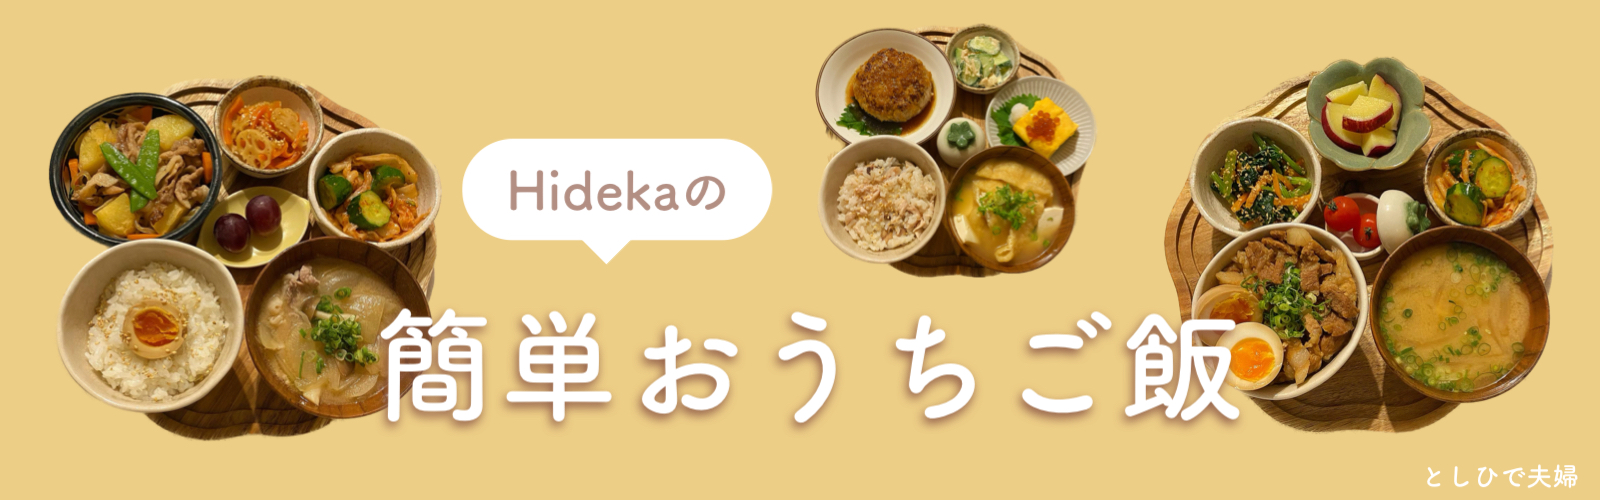 Hidekaの簡単おうちご飯